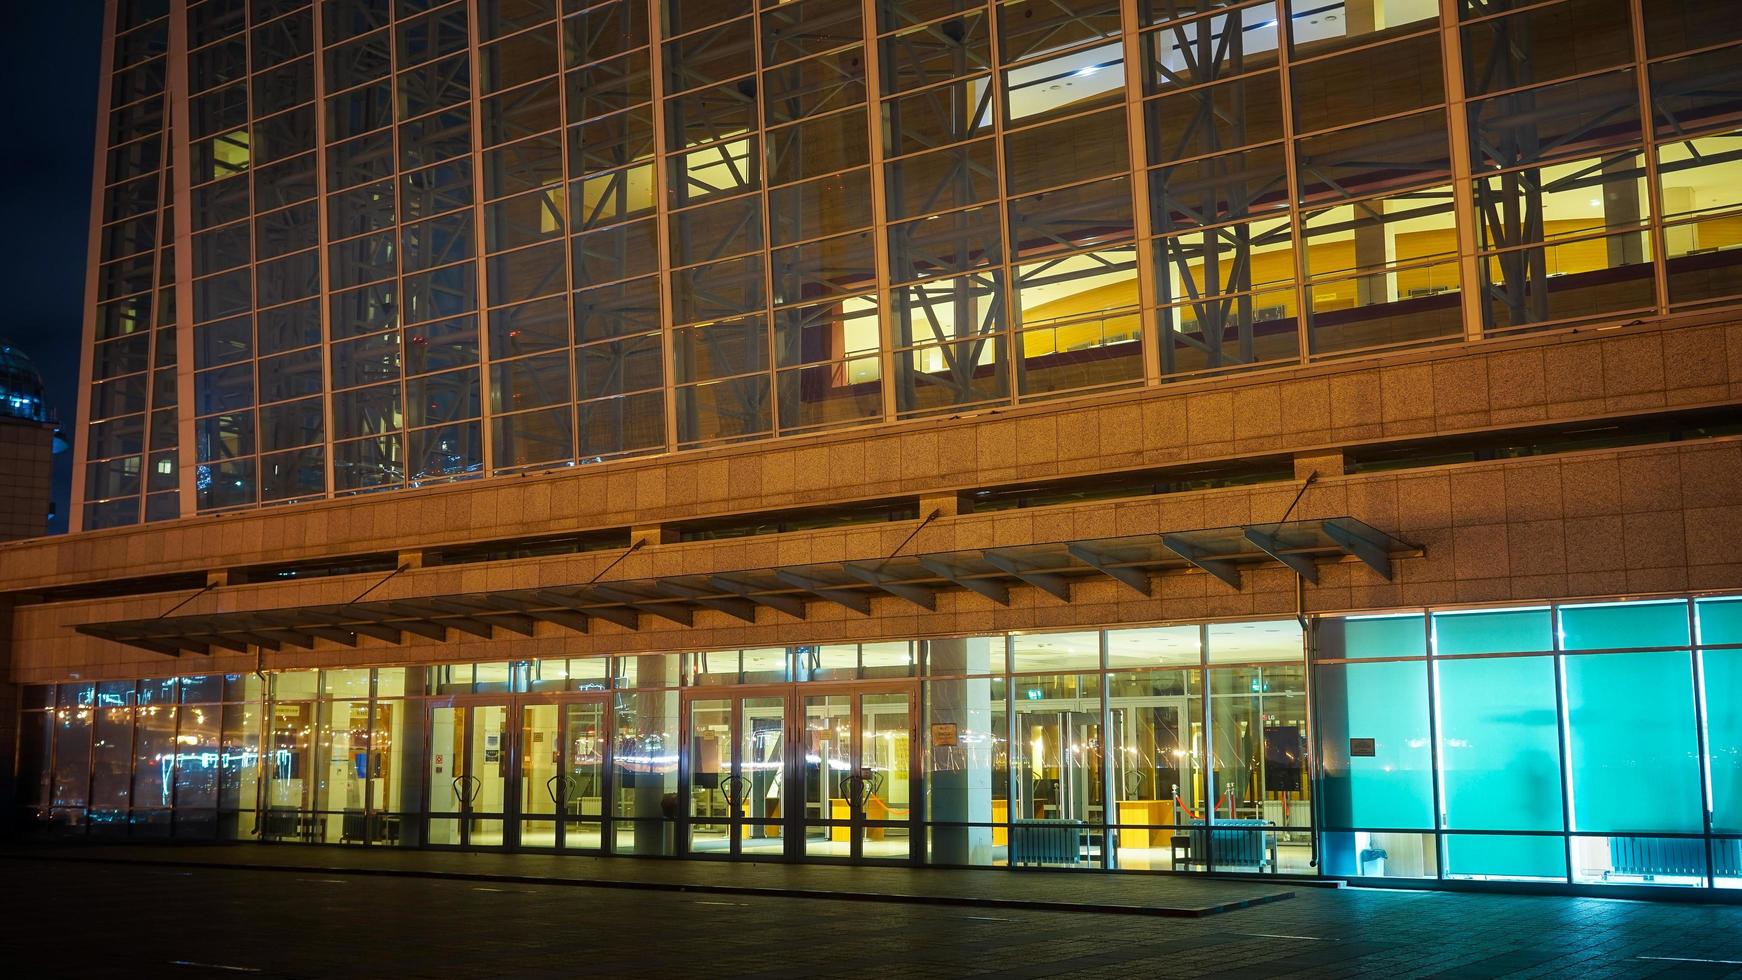 vladivostok, rusland - 18 augustus 2019-nachtlandschap met uitzicht op de architectuur van het mariinsky-theater, de verlichting siert het moderne gebouw. foto